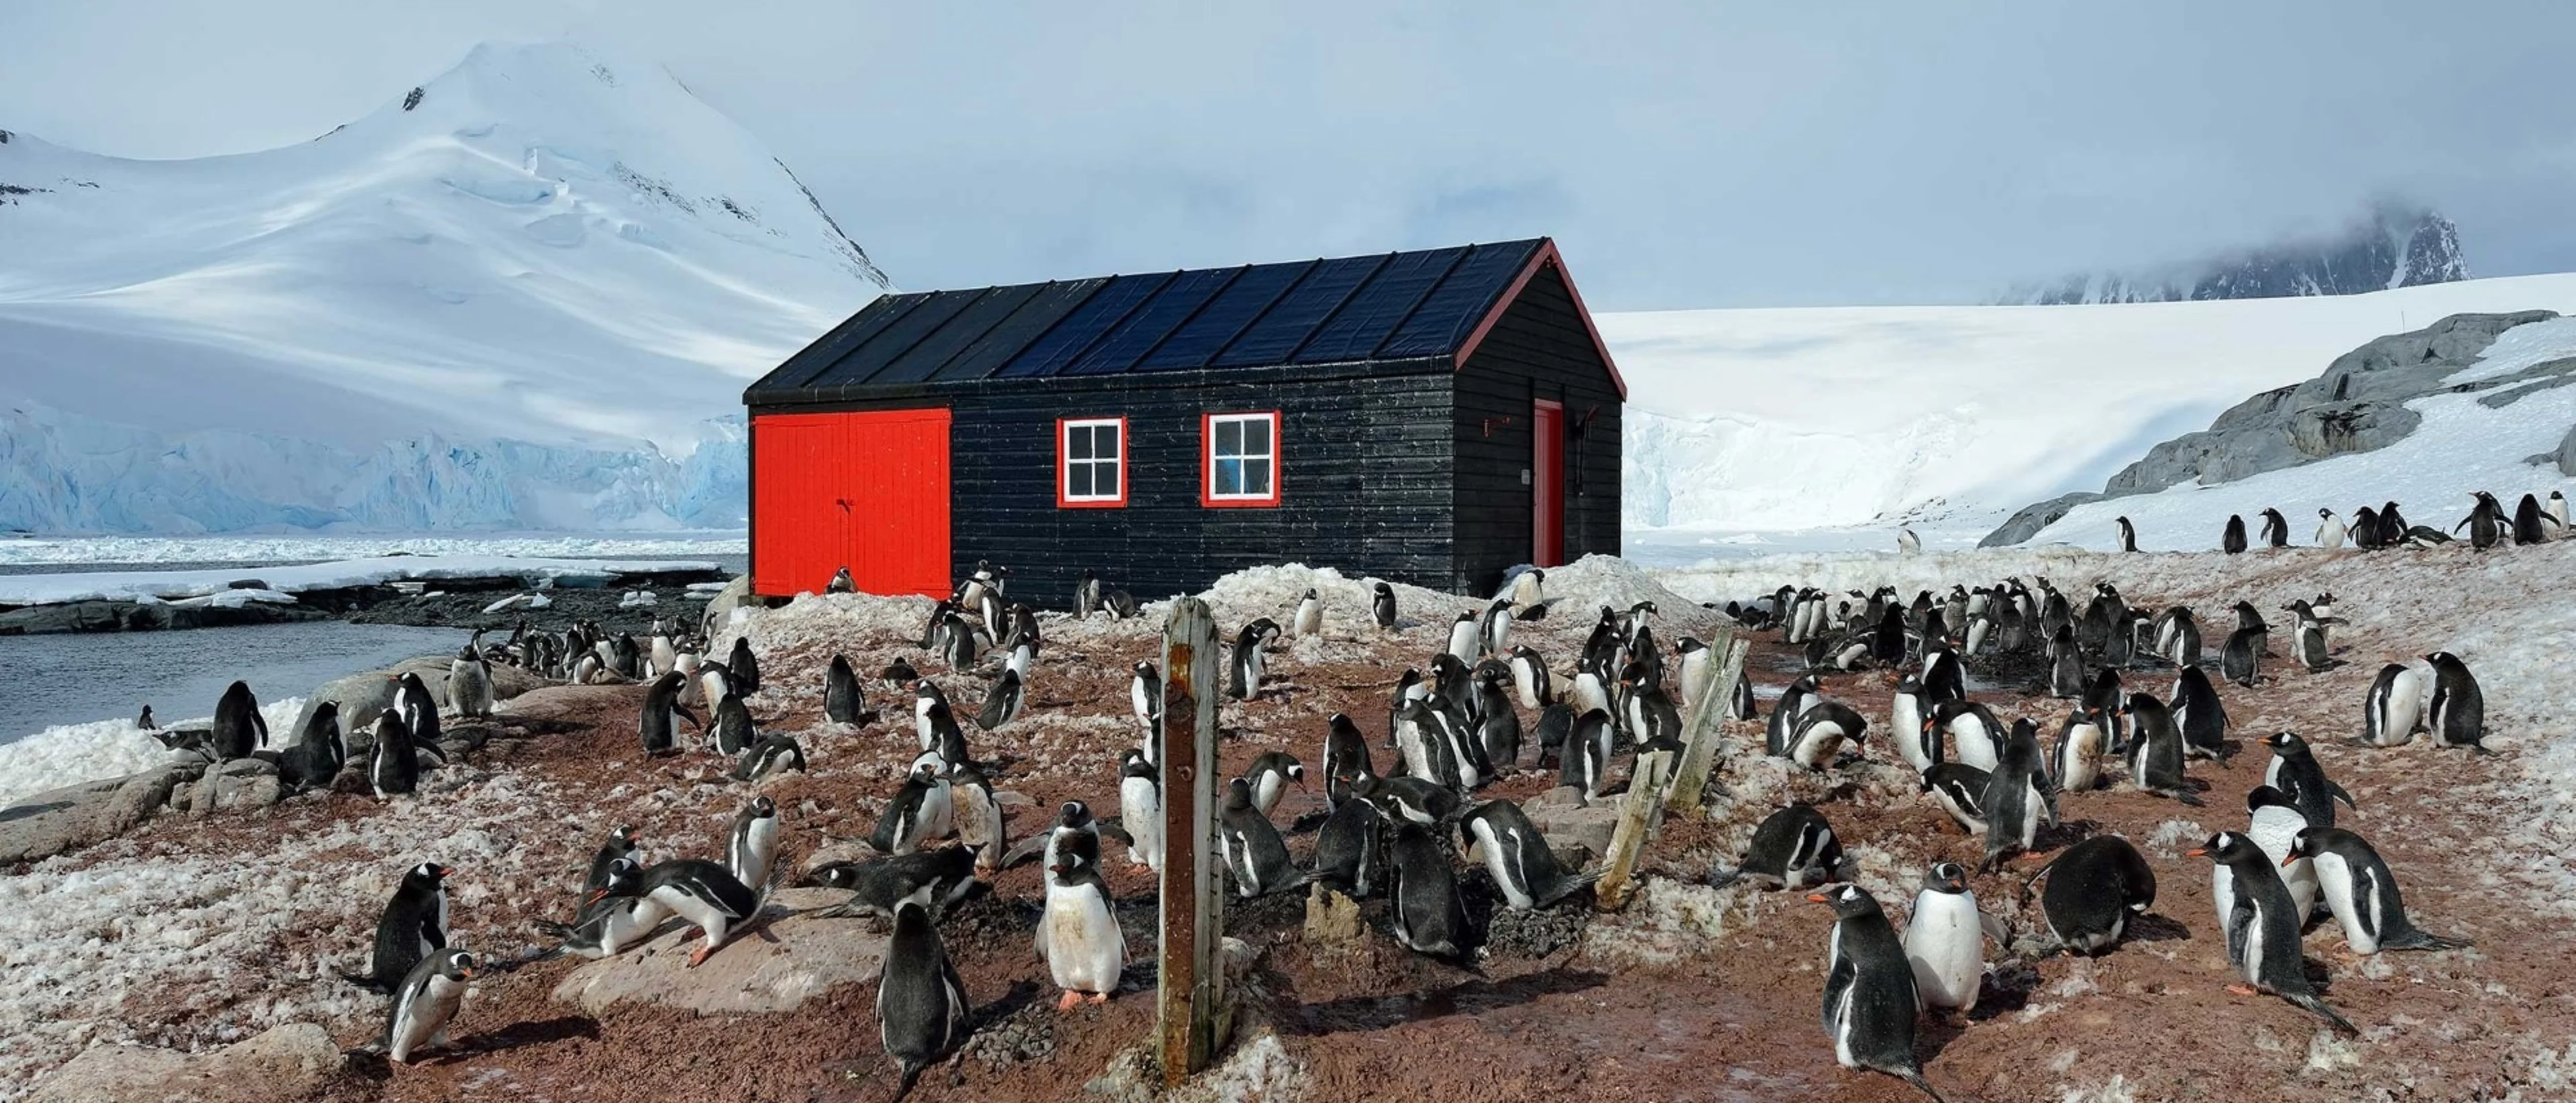 Penguins in front of the old building in Port Lockroy, Antarctica. Photo: Marsel van Oosten